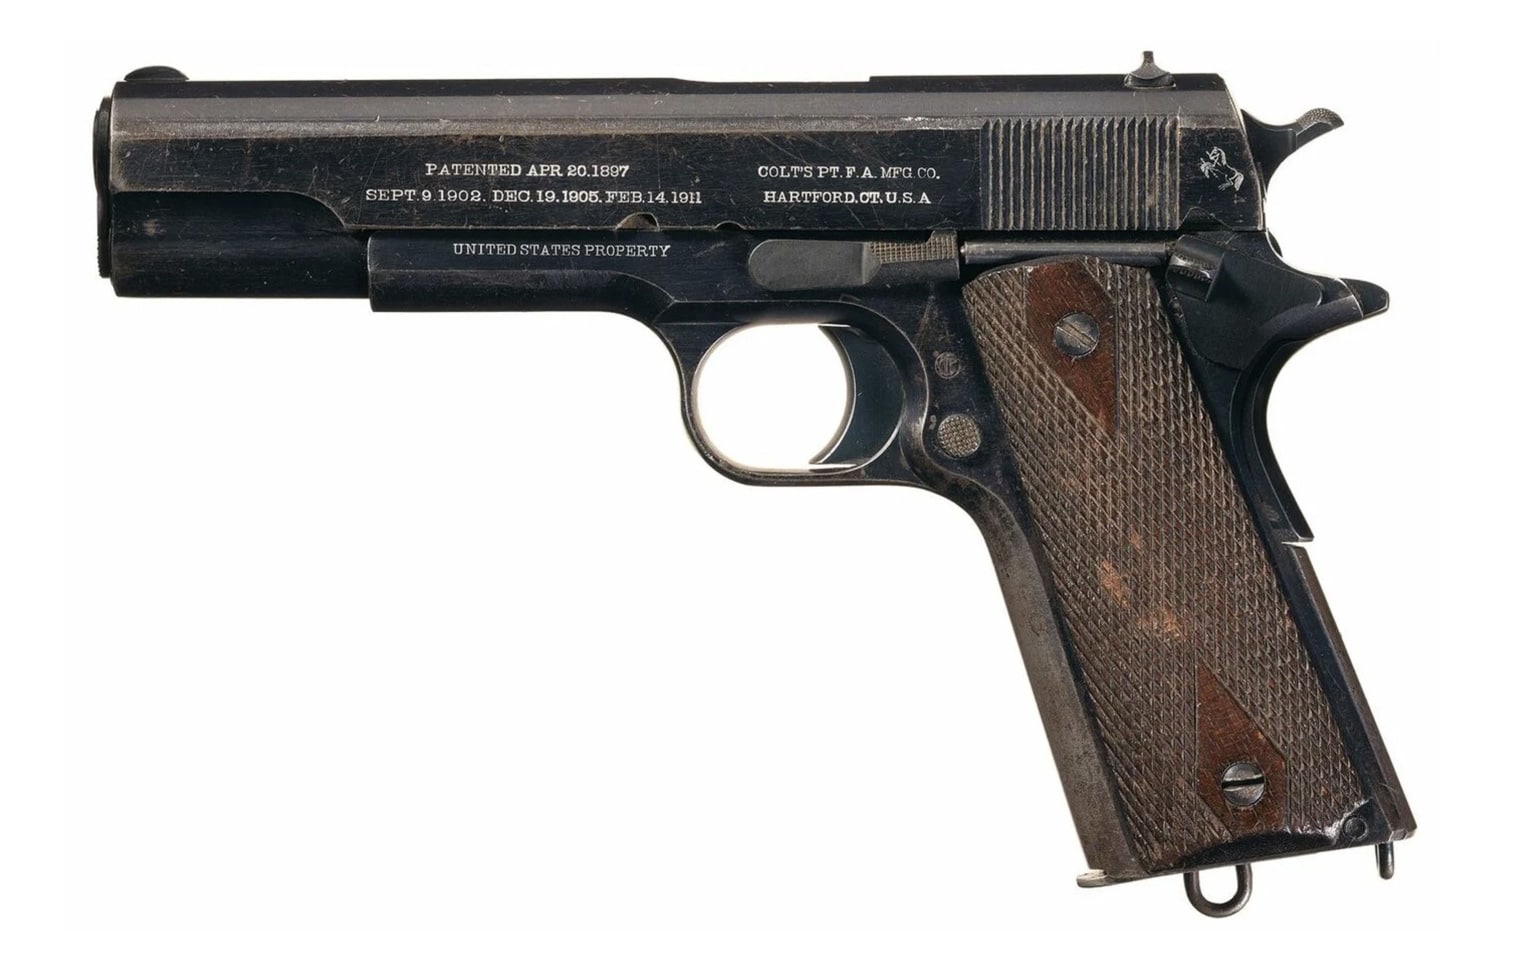 M1911